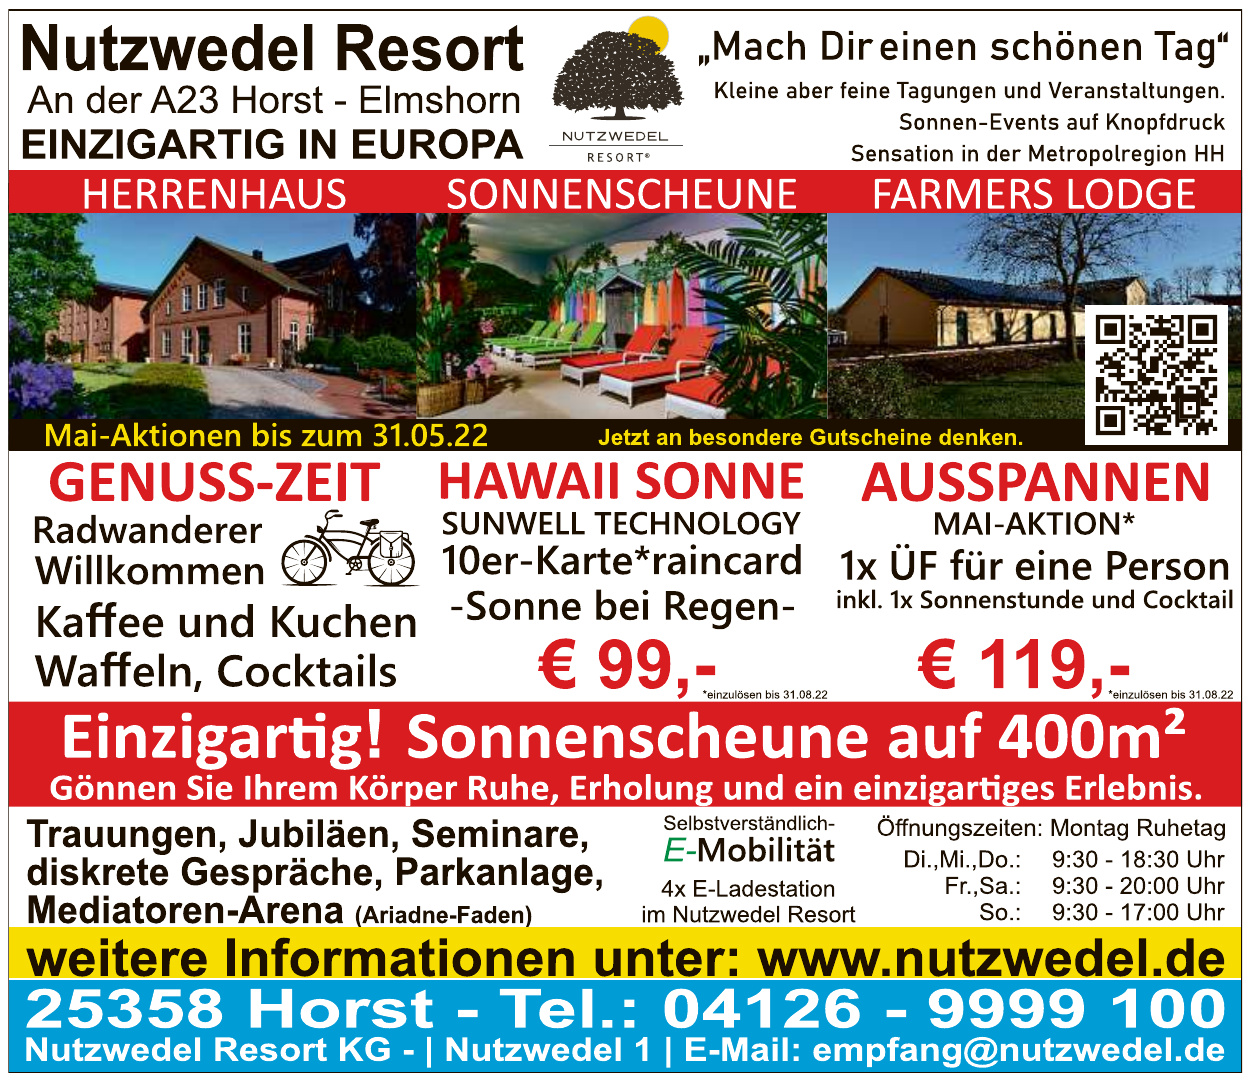 Nutzwedel Resort KG